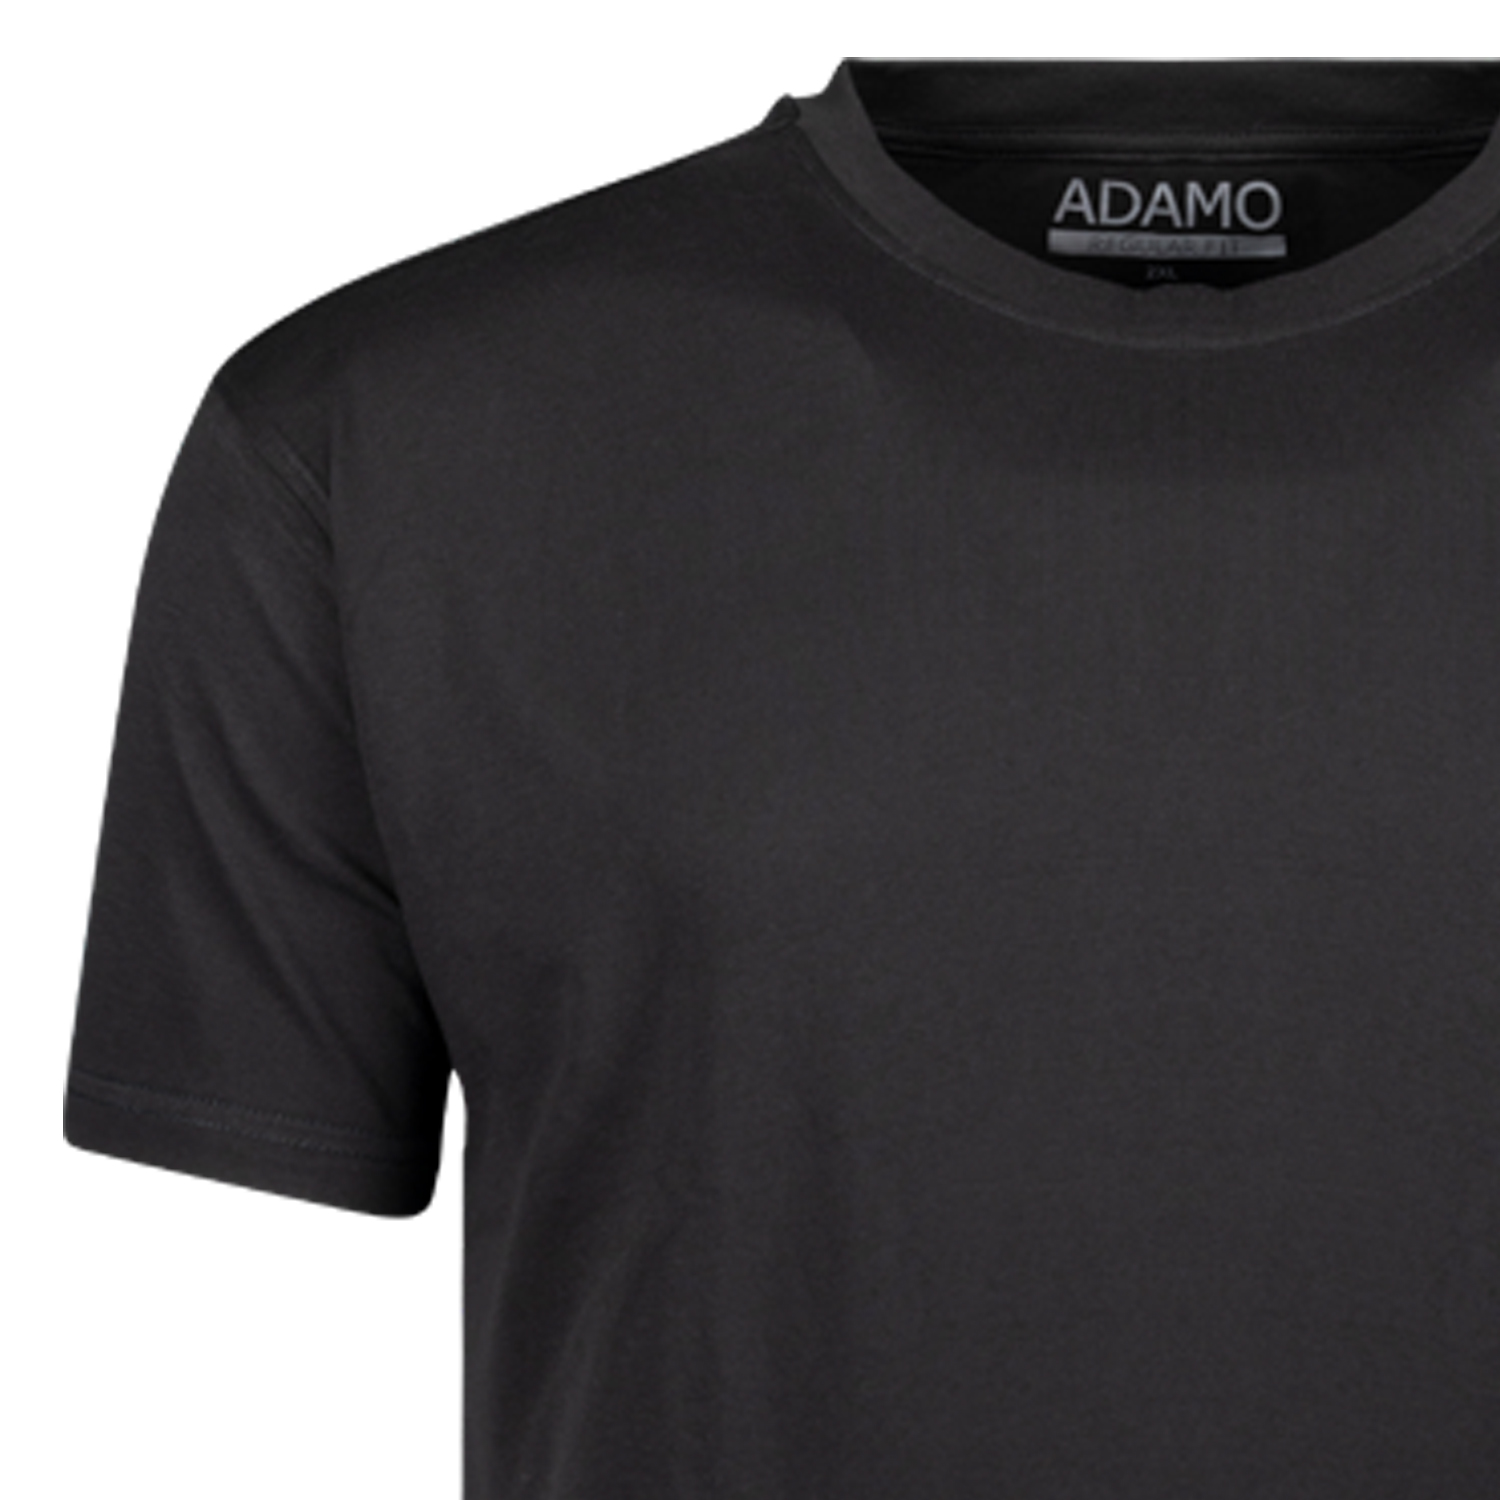 T-shirts série KEVIN by ADAMO jusqu'à la grande taille 10XL - couleur: noir